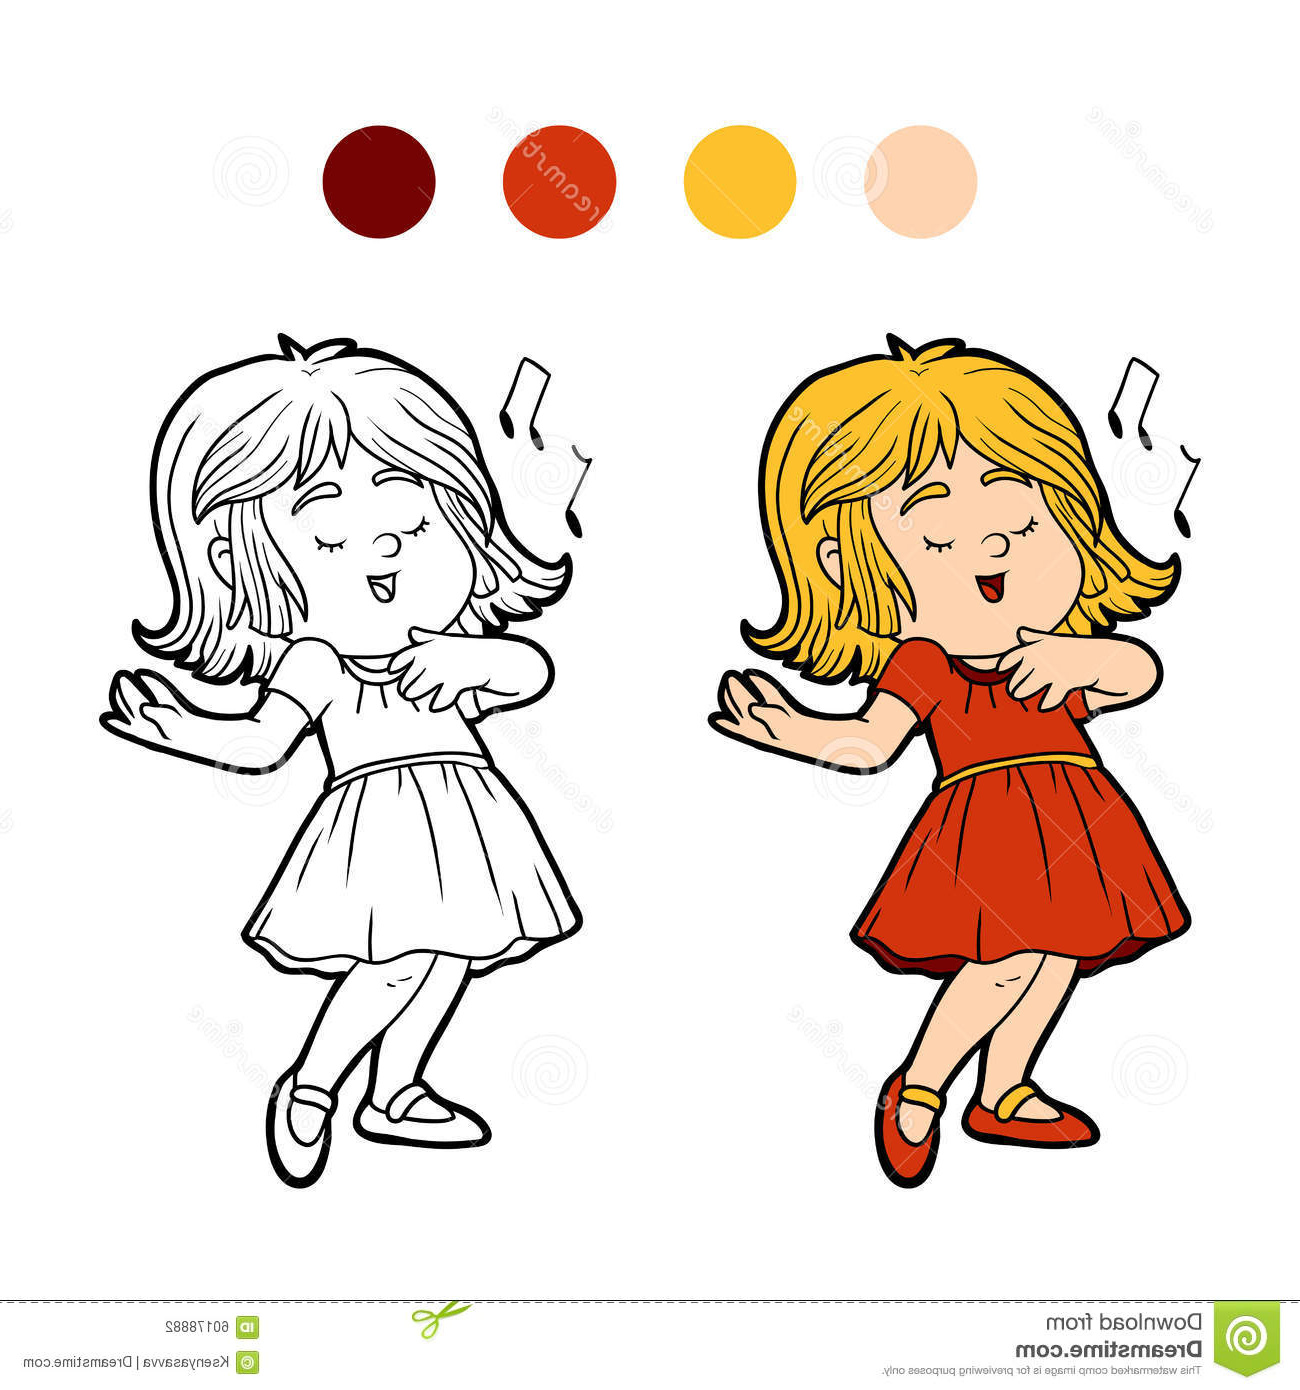 illustration stock livre de coloriage la petite fille dans une robe rouge chante une chanson image